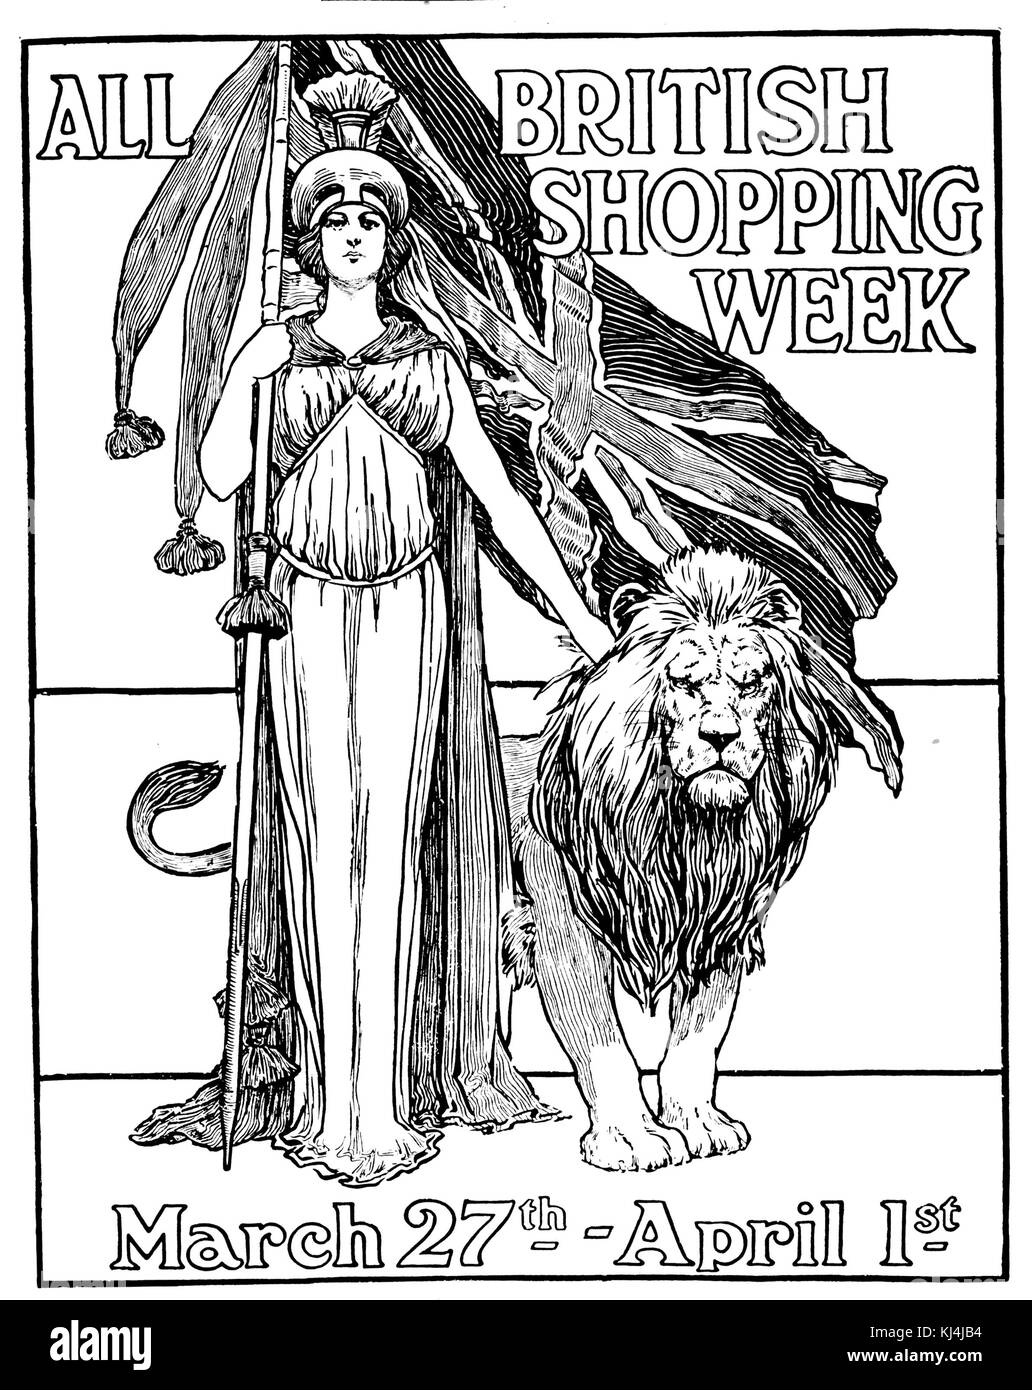 Tutta LA SETTIMANA BRITANNICA DELLO SHOPPING annuncio della rivista per promuovere i prodotti domestici nel 1911 Foto Stock